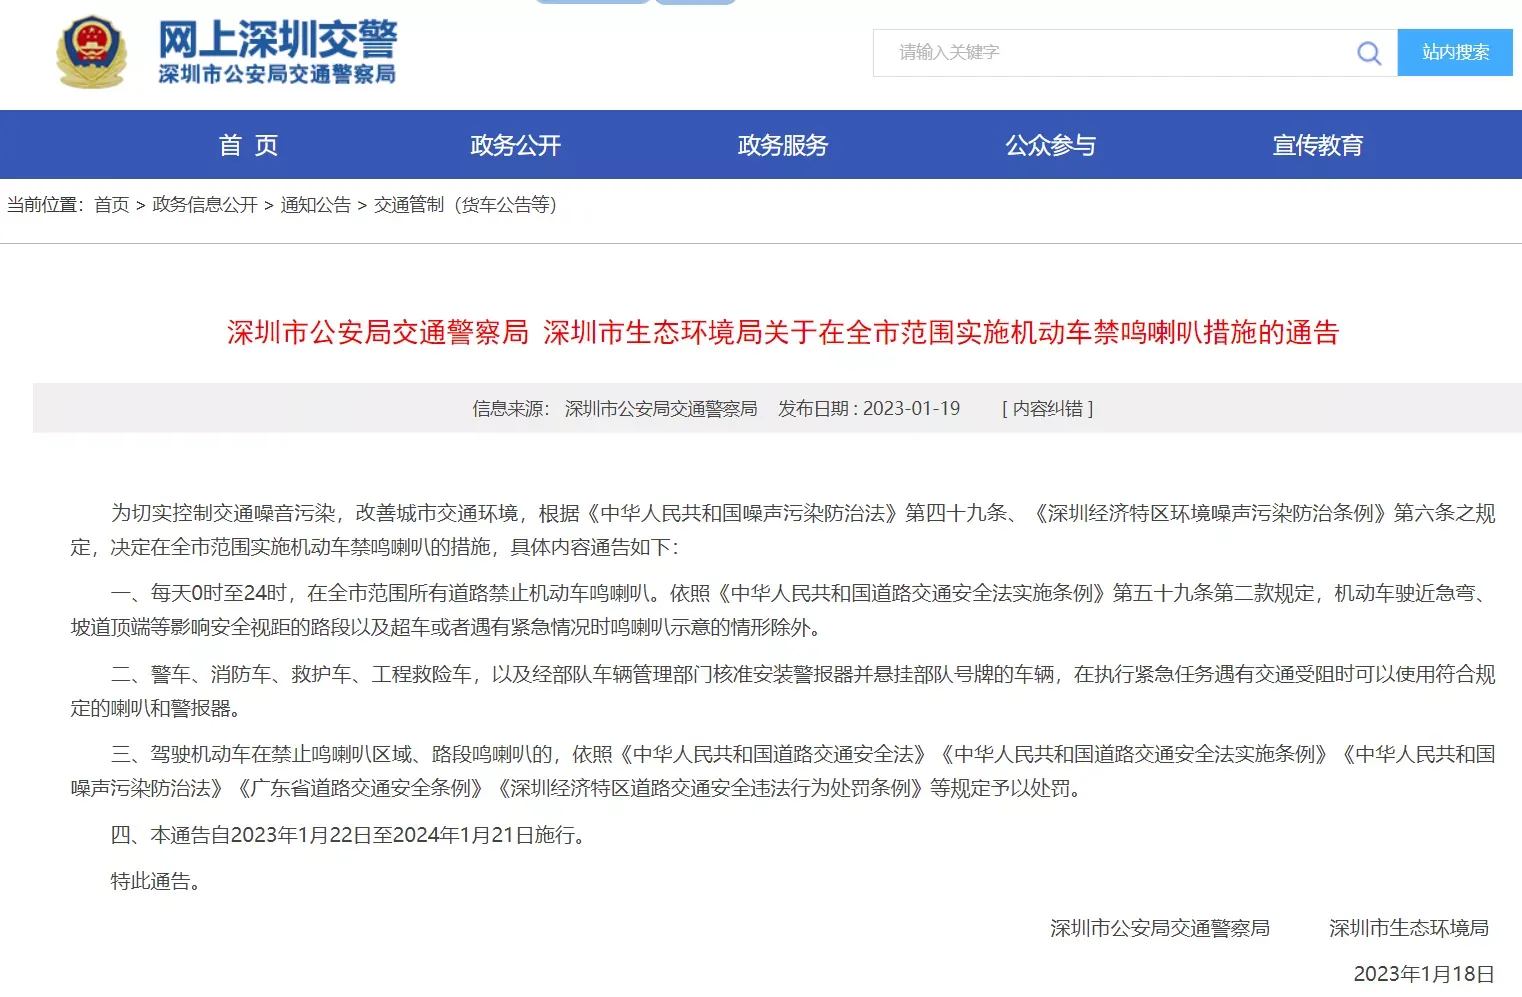 深圳全市将禁止机动车鸣喇叭，一直到明年(2024年)1月21日